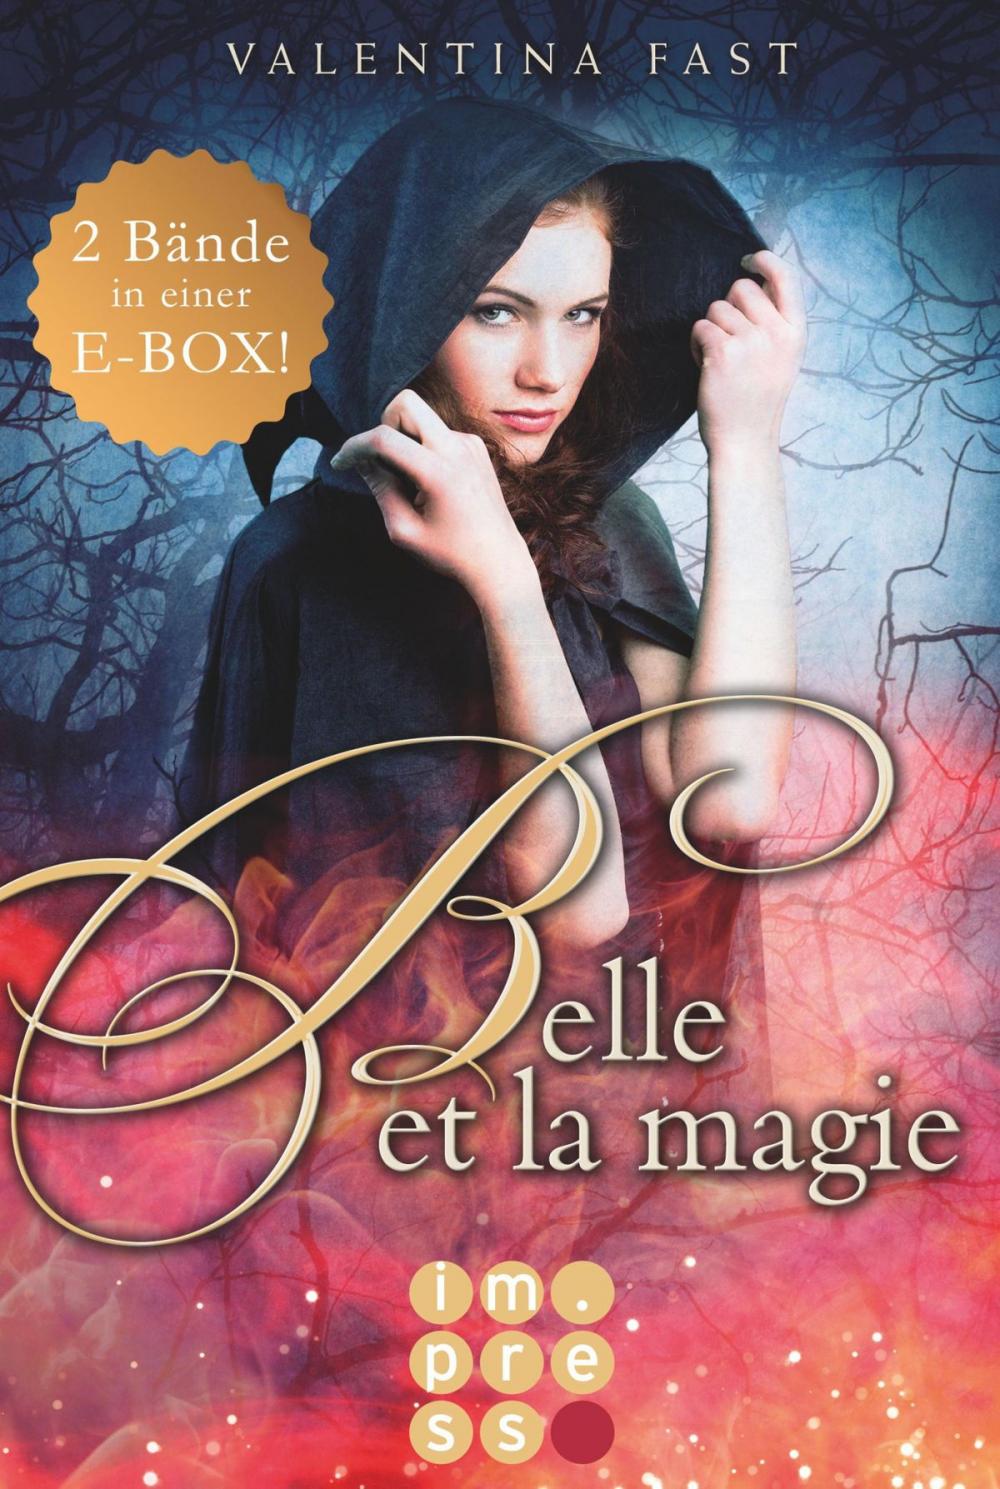 Big bigCover of Belle et la magie: Alle Bände in einer E-Box!